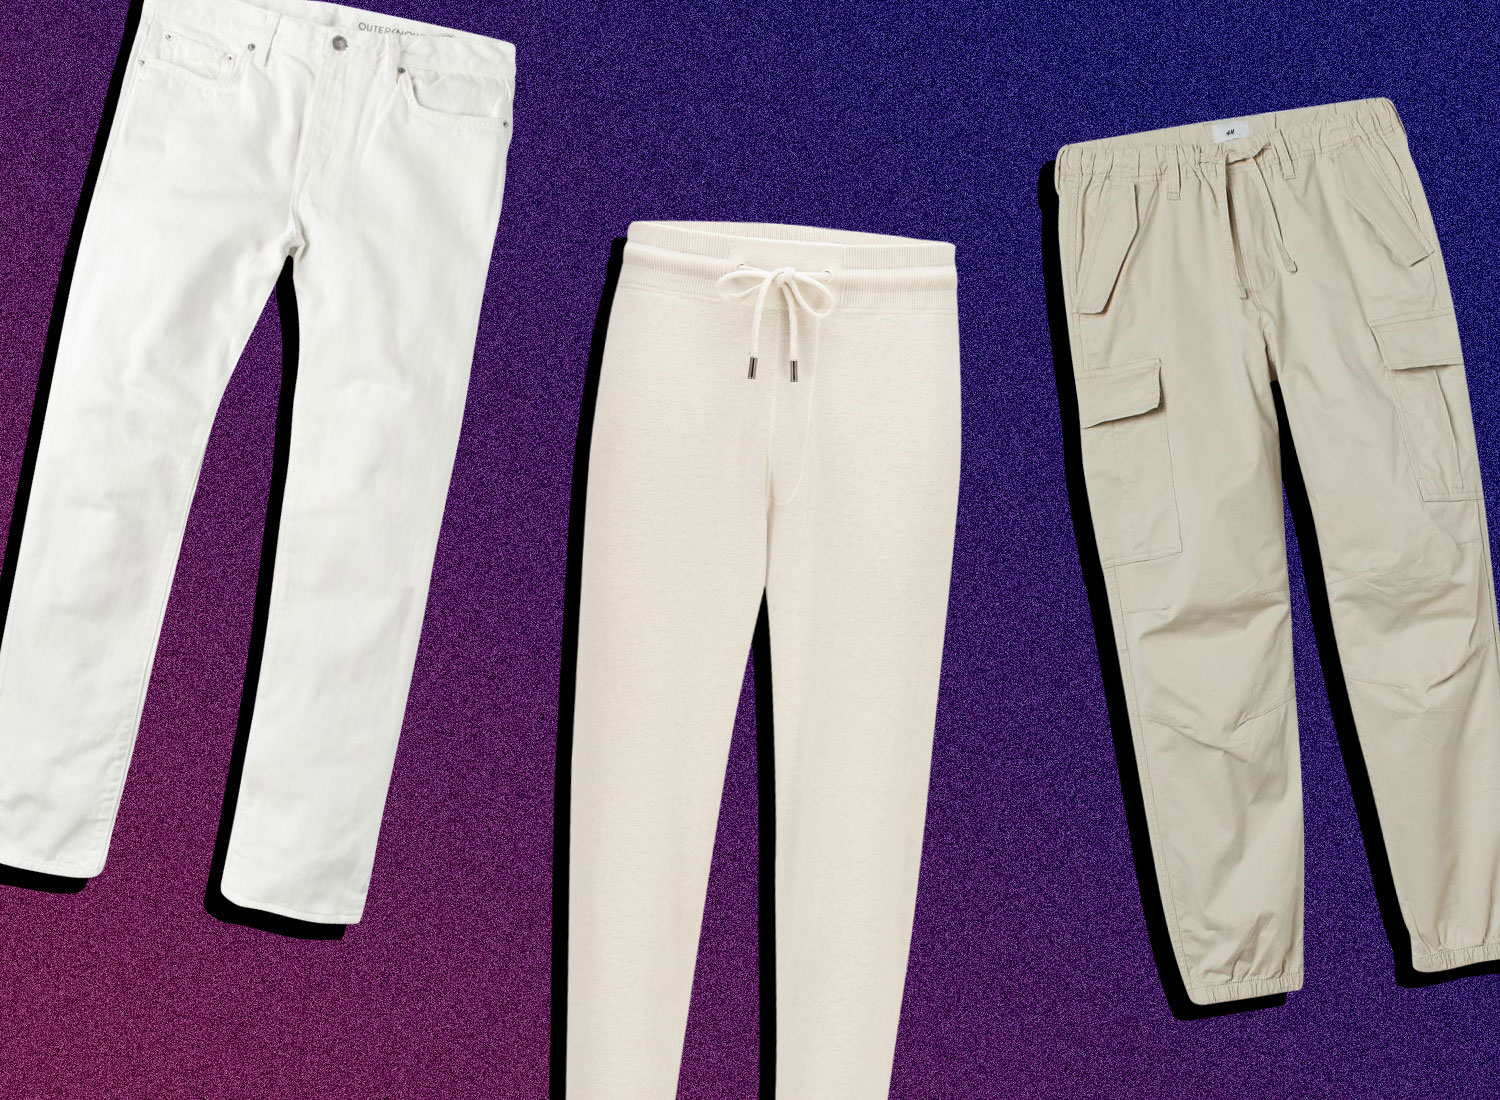 15 Best White Pants For Summer Lovin’ Men